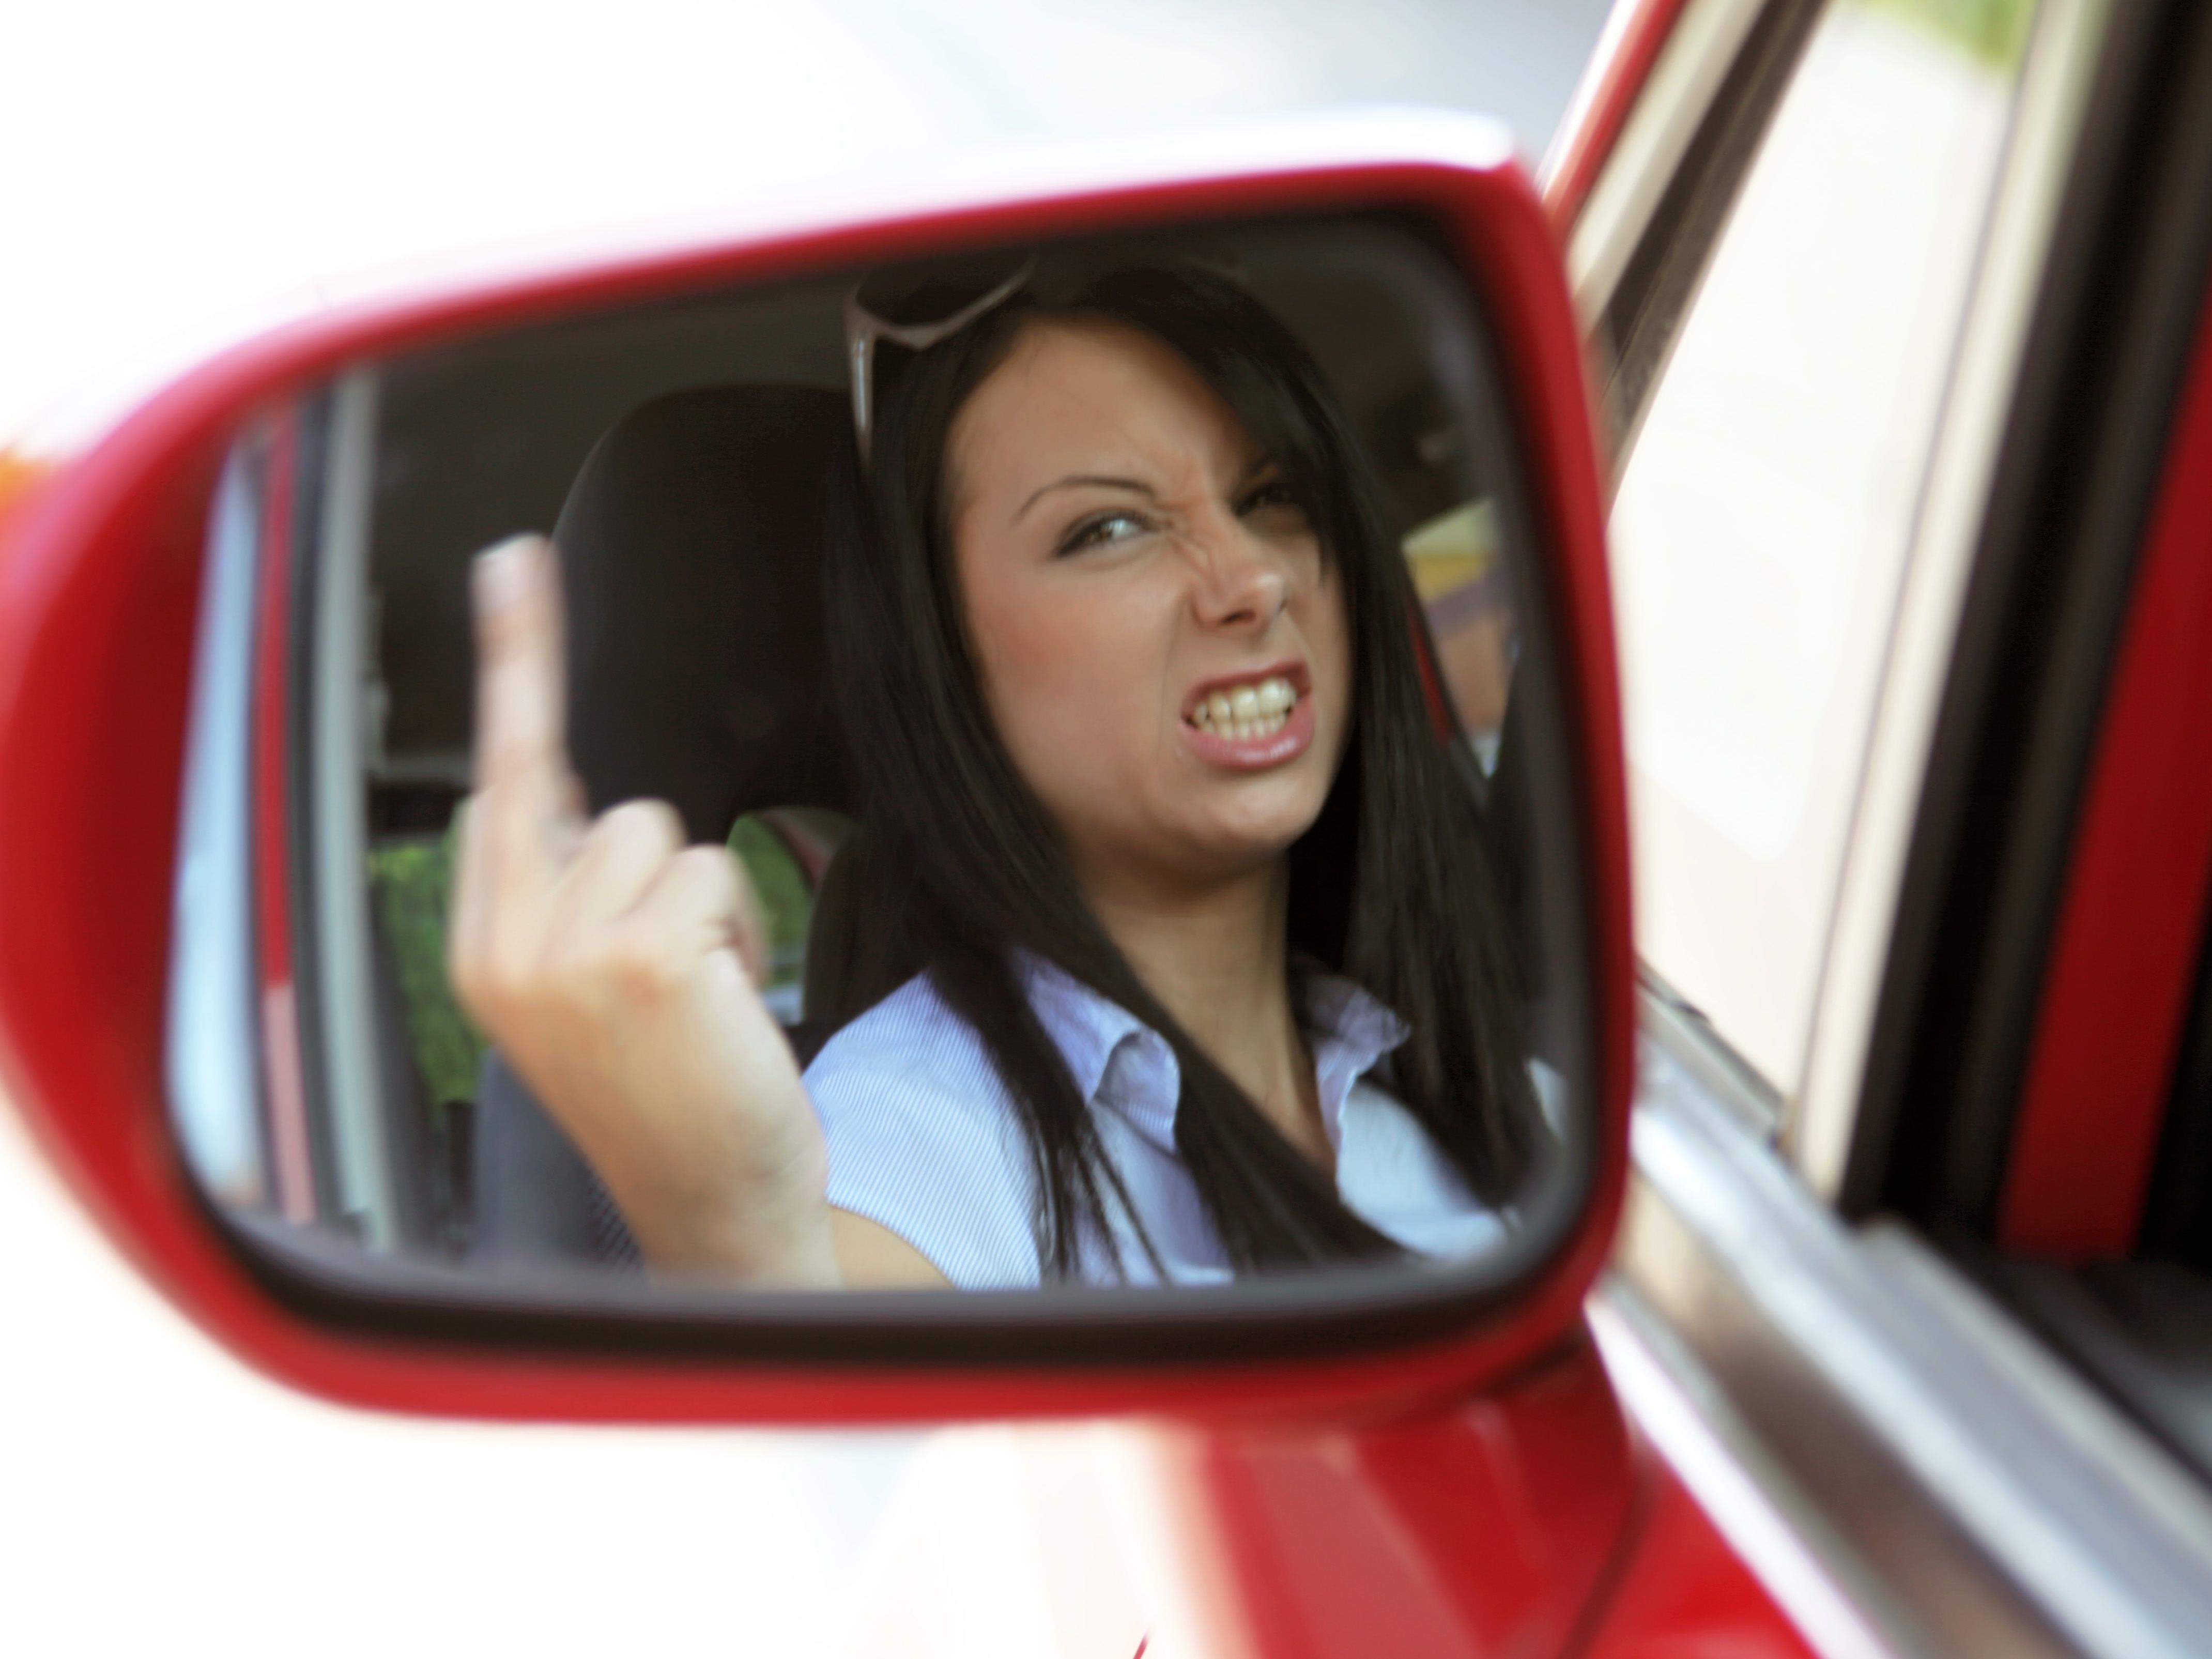 Fahrer, die mit aufbrausendem Verhalten im Straßenverkehr auffallen, ärgern Österreichs Autofahrer am meisten.